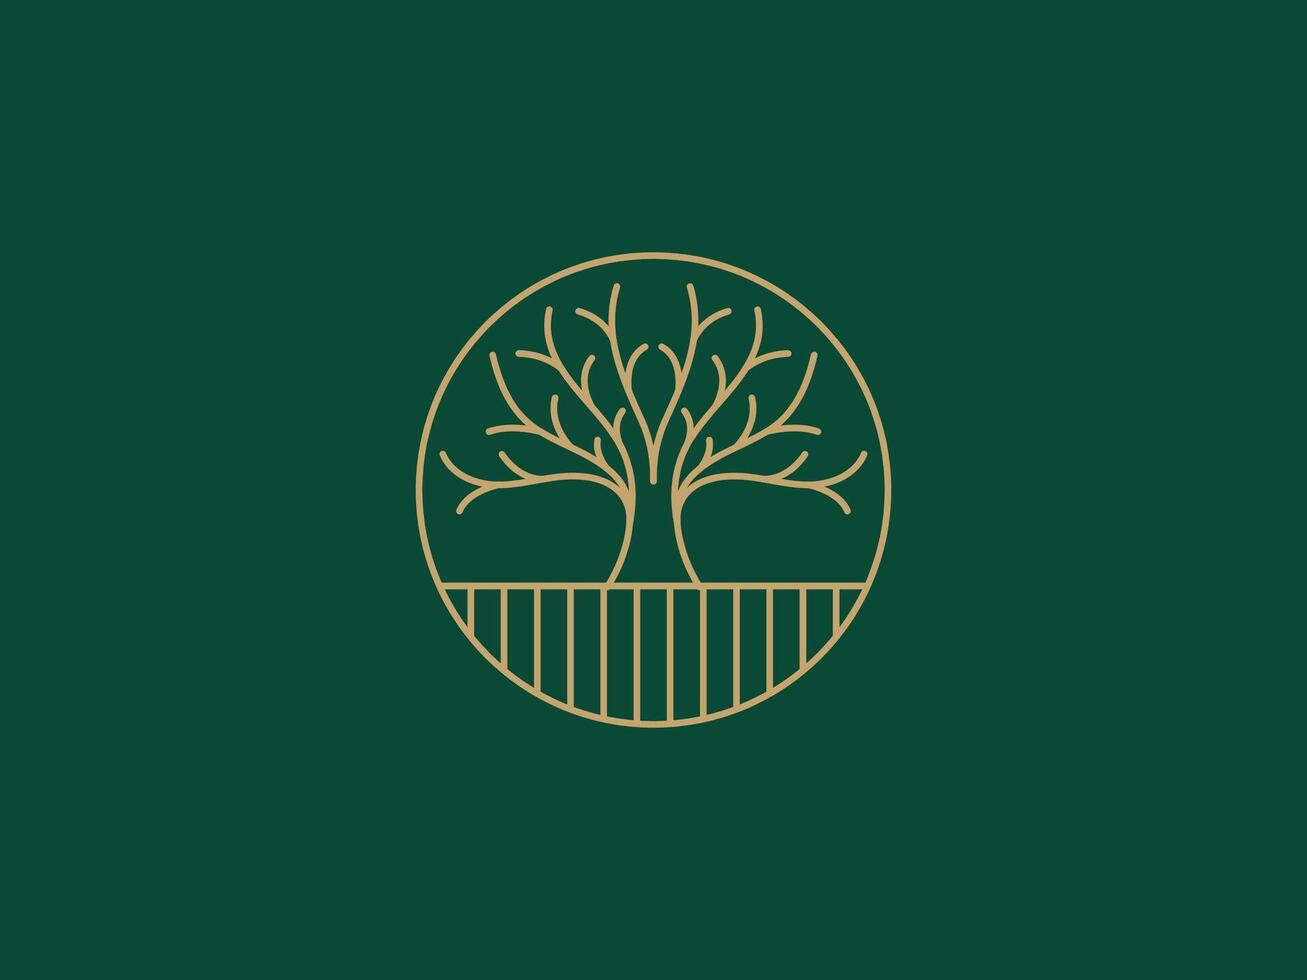 Logo Vorlage zum Geschäft und Unternehmen mit Eiche Baum vektor